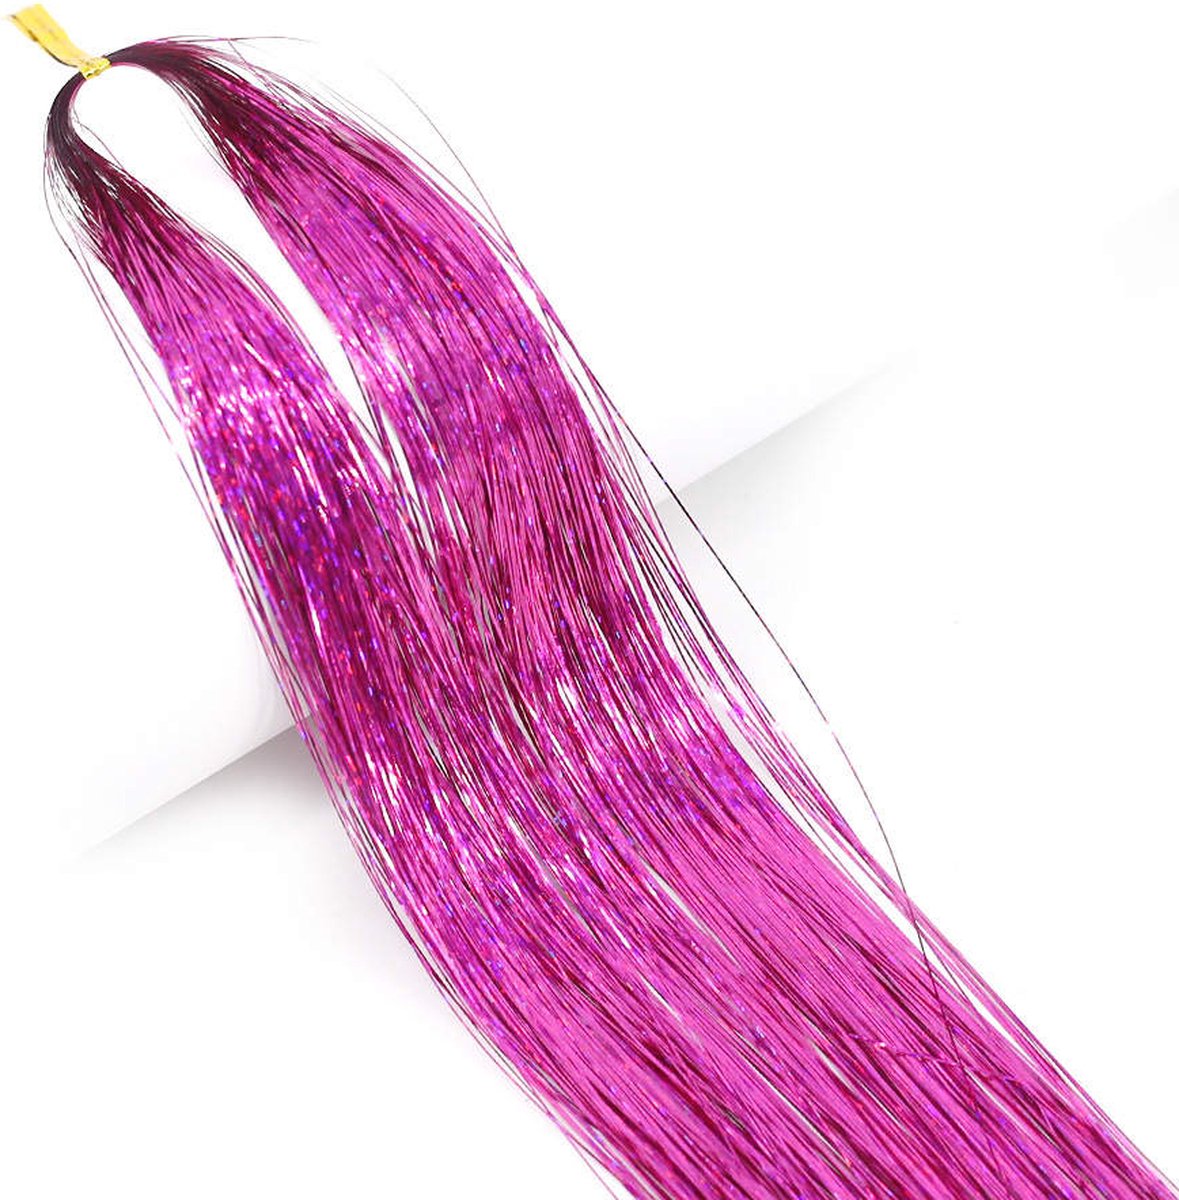 Hair tinsel - Haar glitter - Glitter extensions - Hair tinsel glitter - Haar tinsel - Hair tinsels - Haar glitter festival - 120-150 stuks